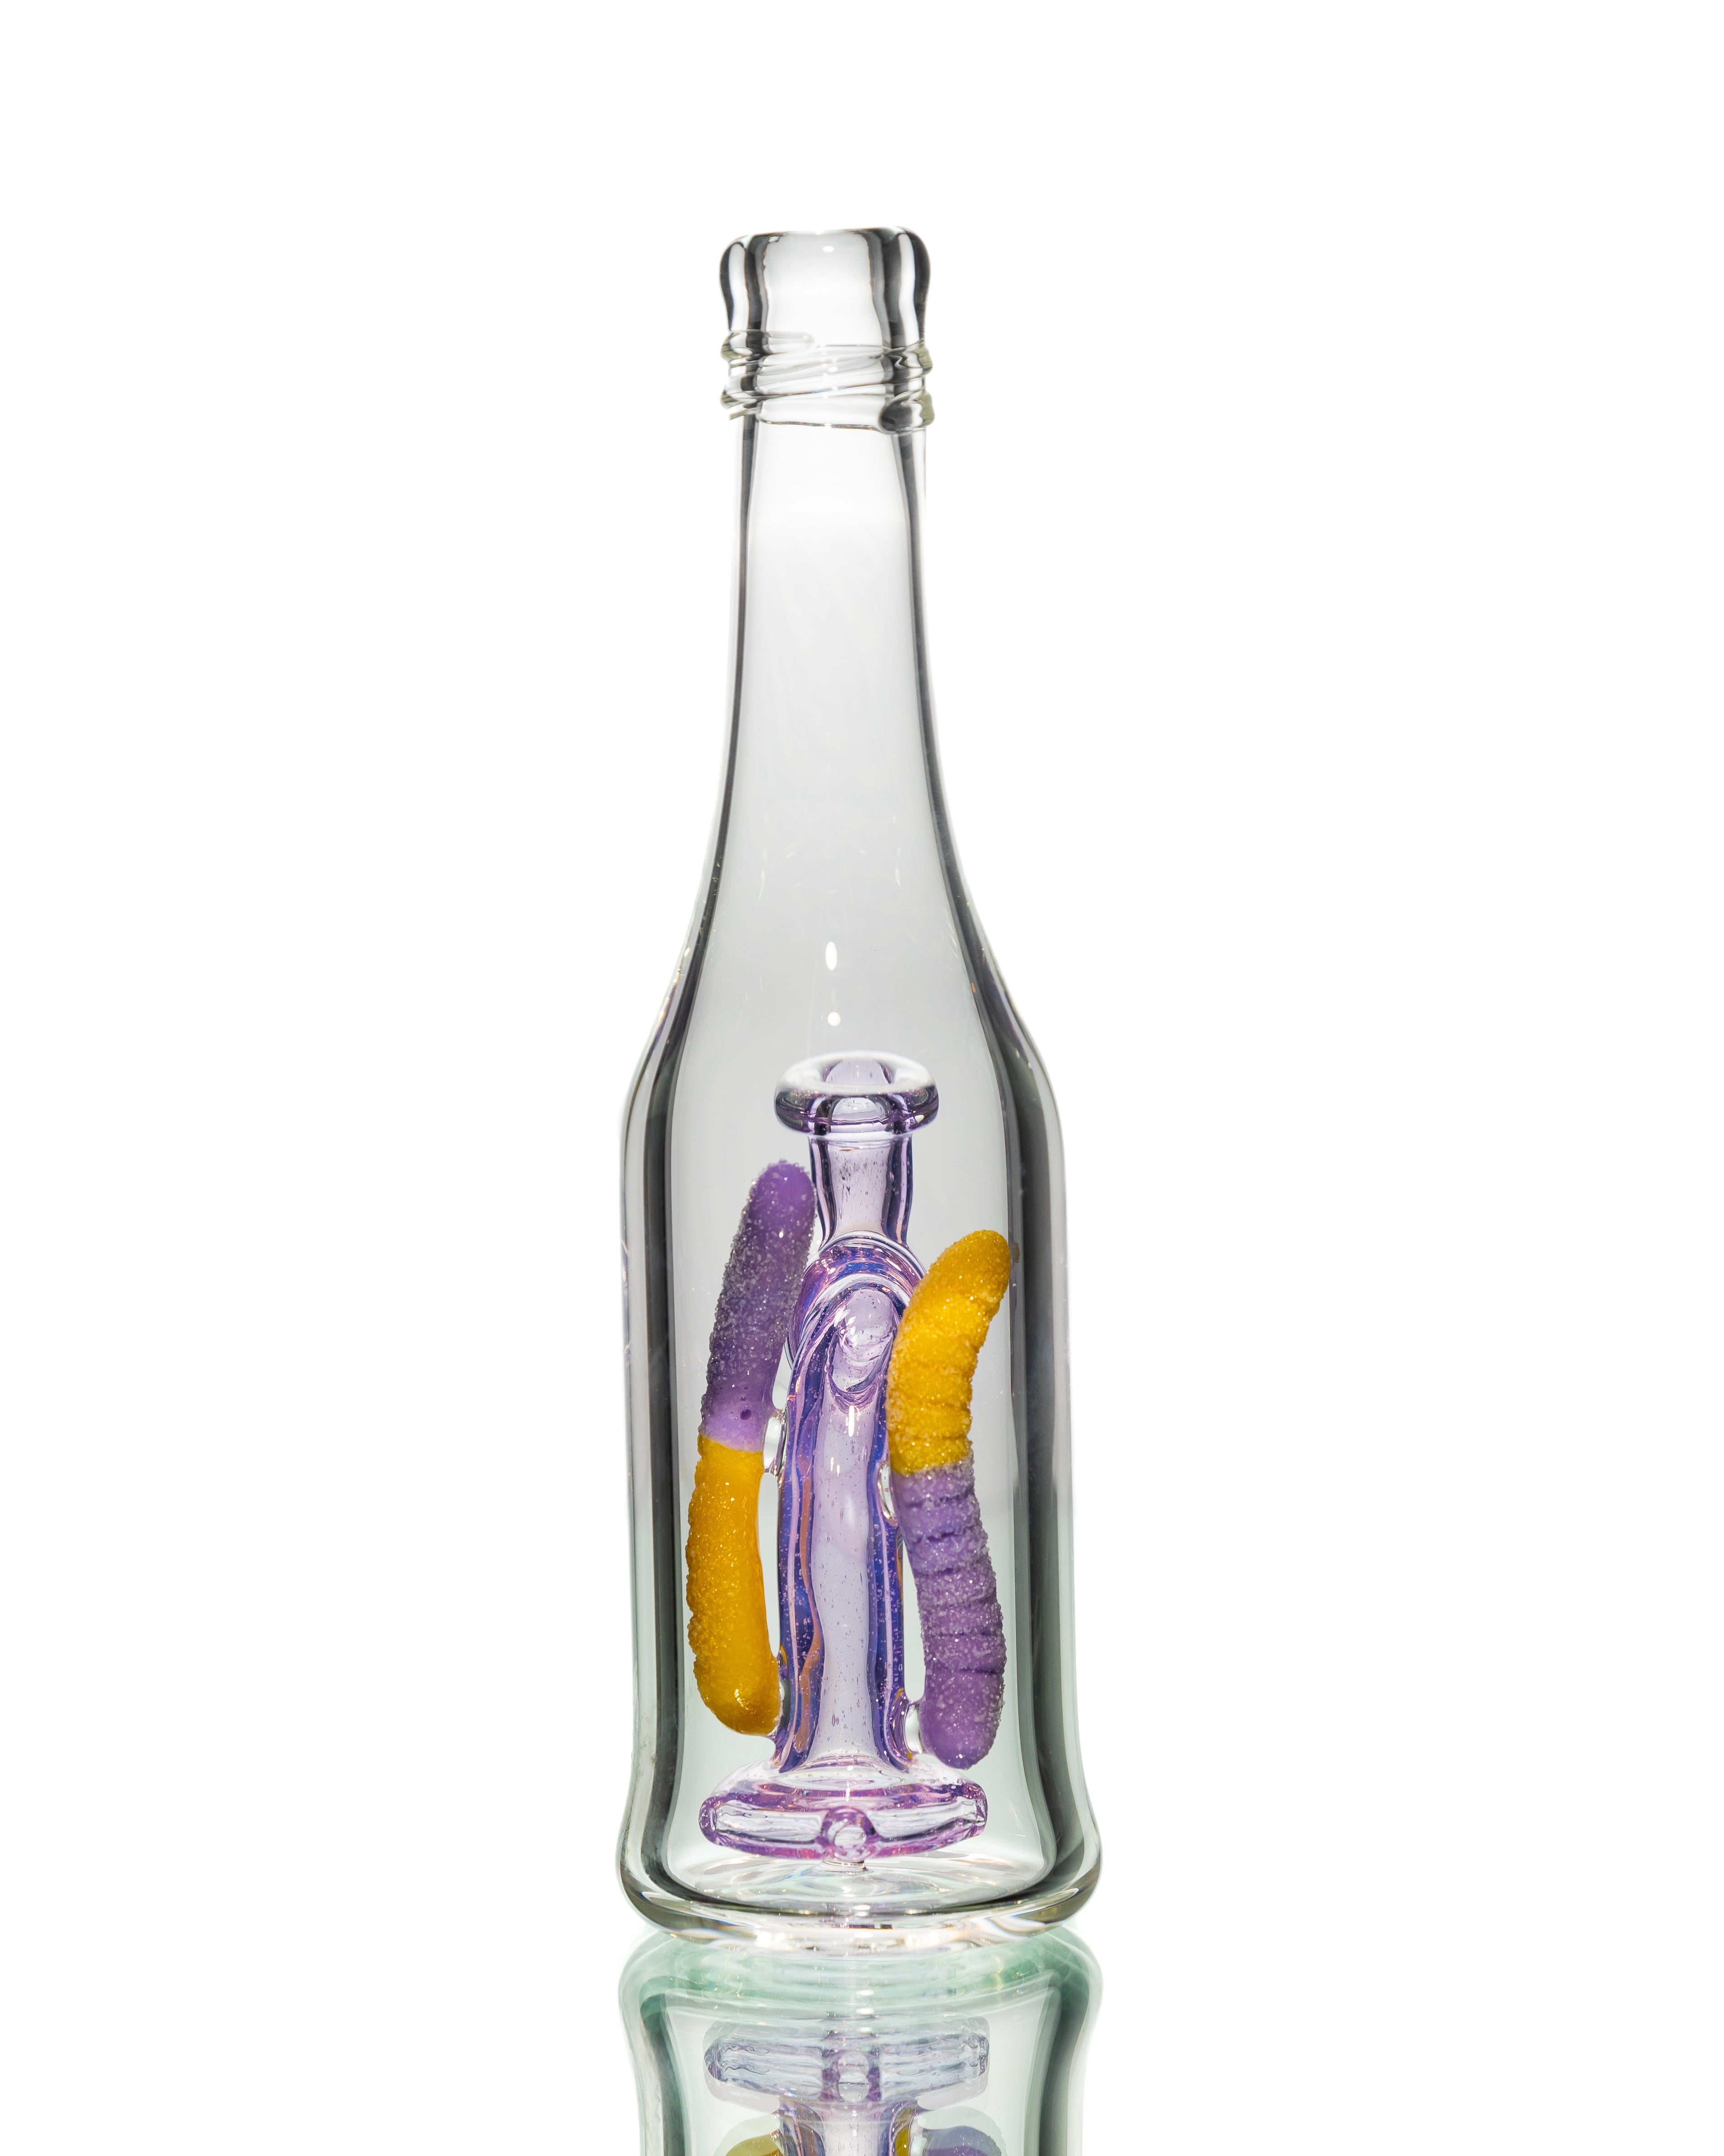 Emperial Glass - Sour Worm Bottle Rig -  Purple Lollipop & Lemon Drop